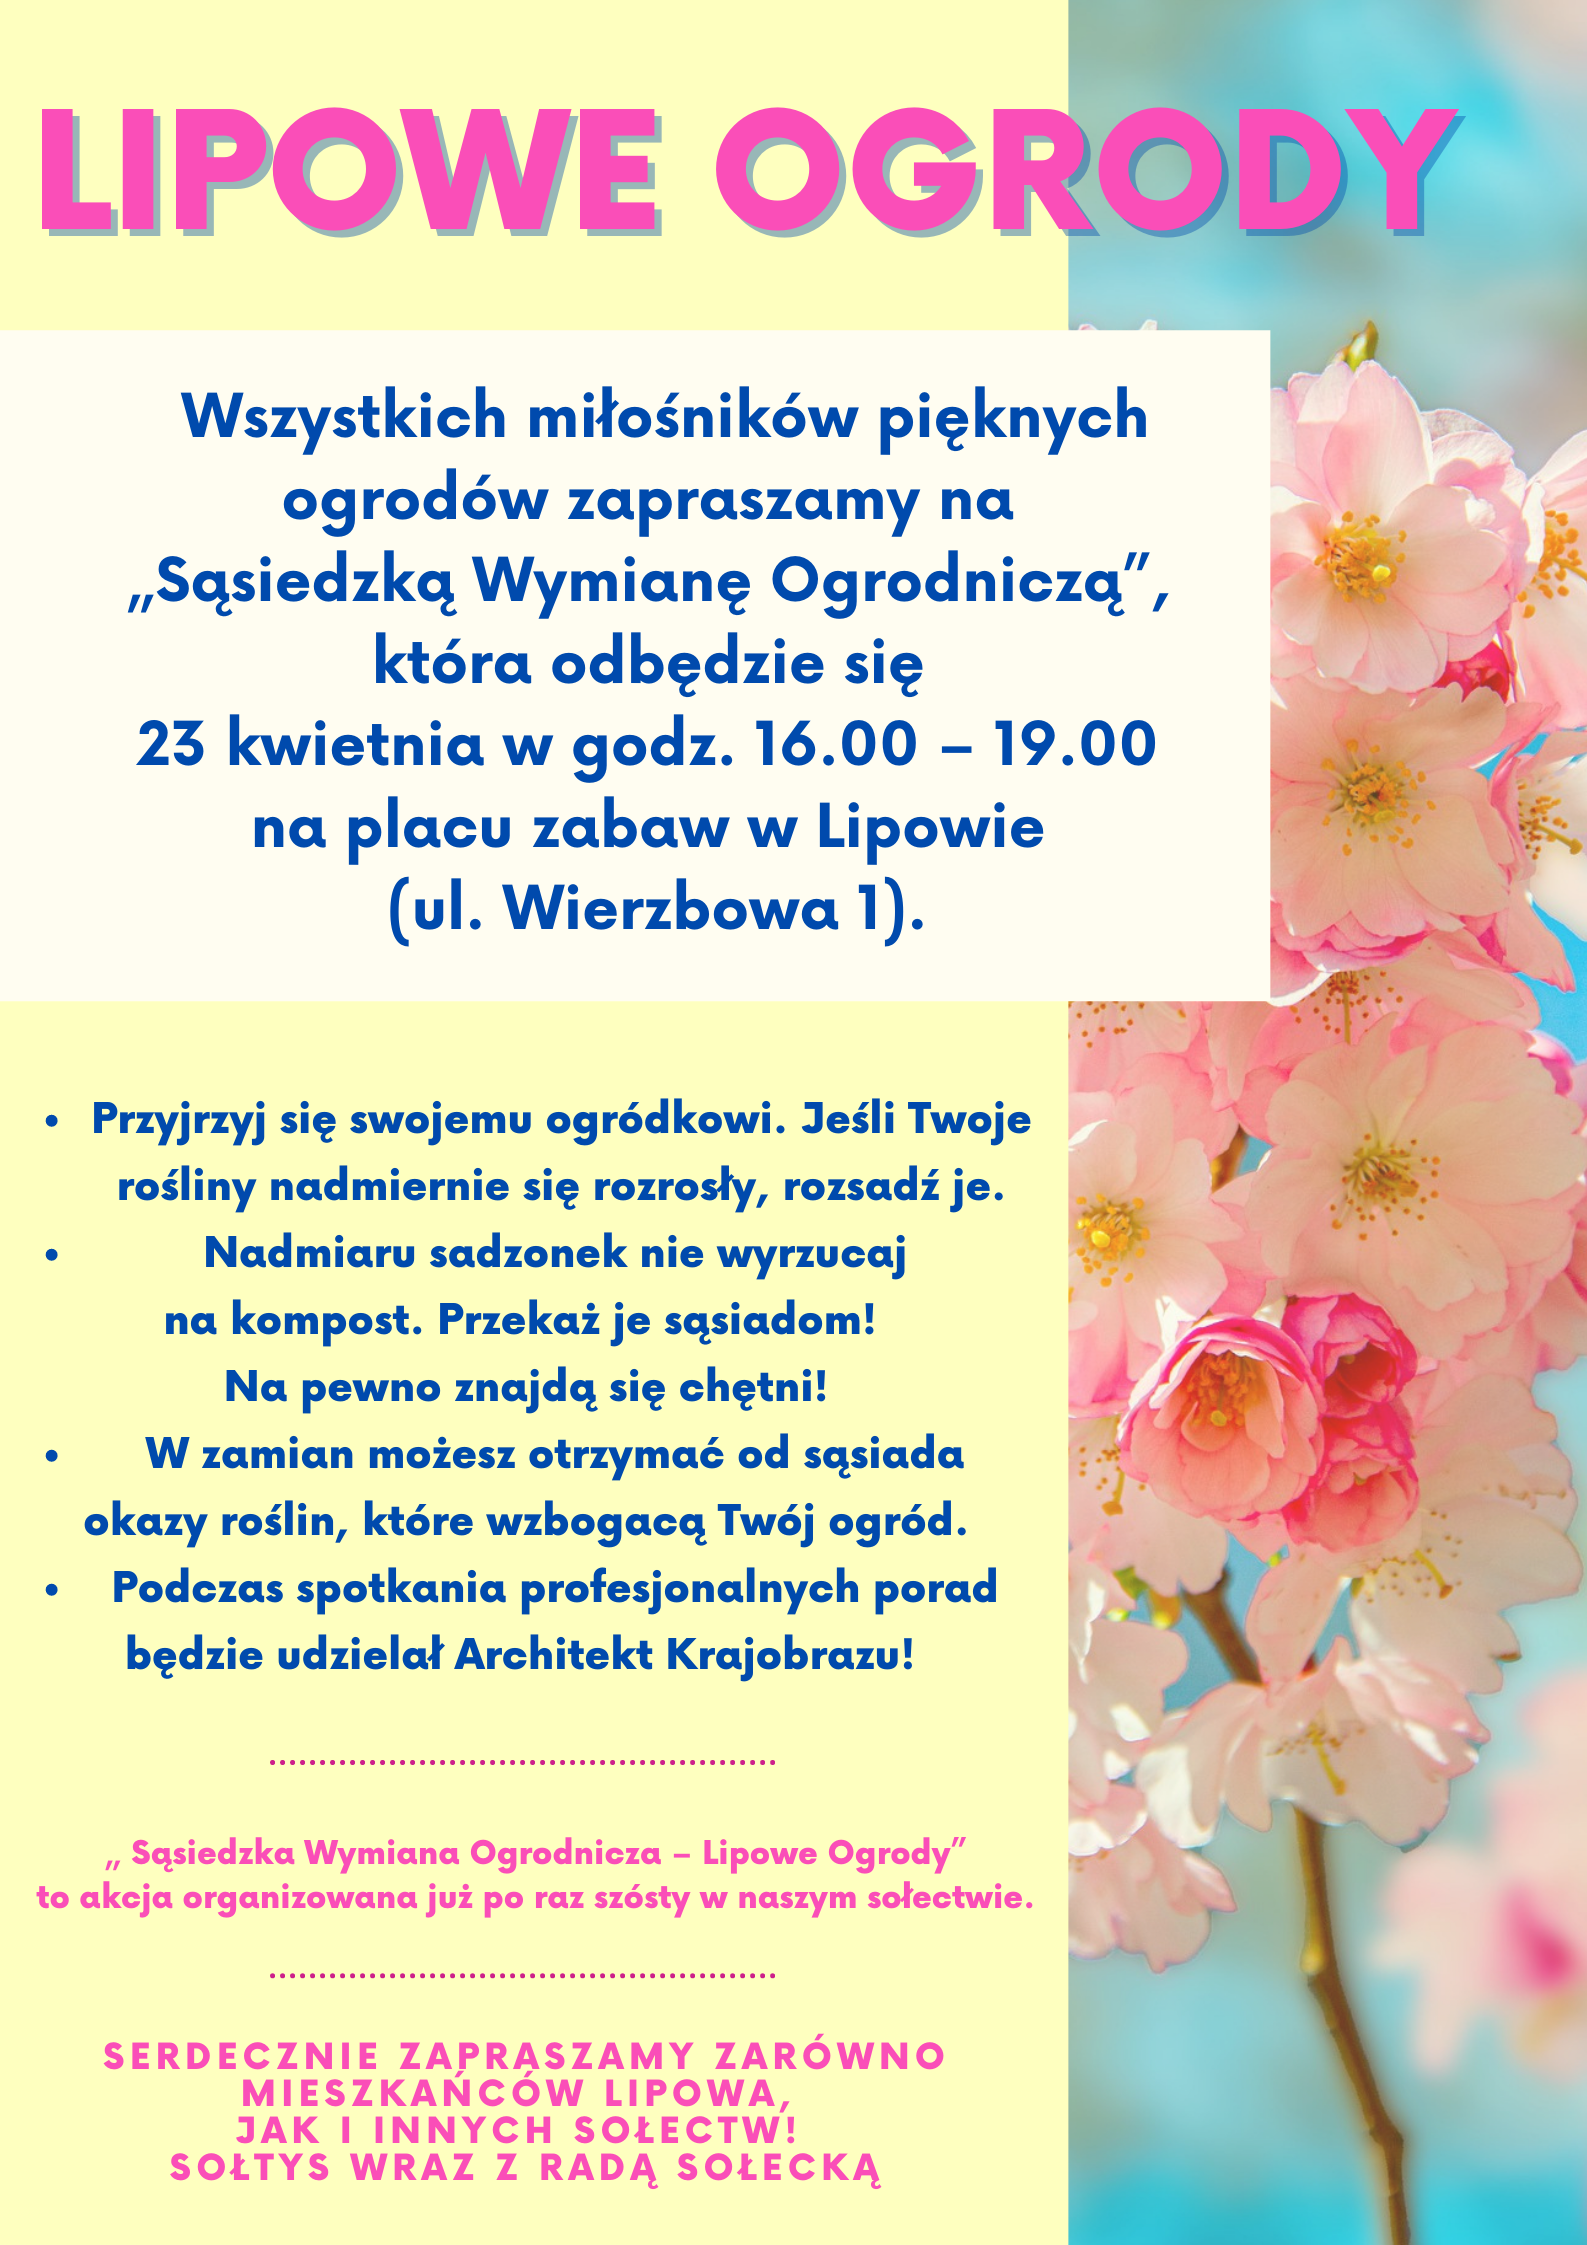 Lipowie ogrody, czyli sąsiedzka wymiana sadzonek roślin w Lipowie 23 kwietnia o godz. 16.00